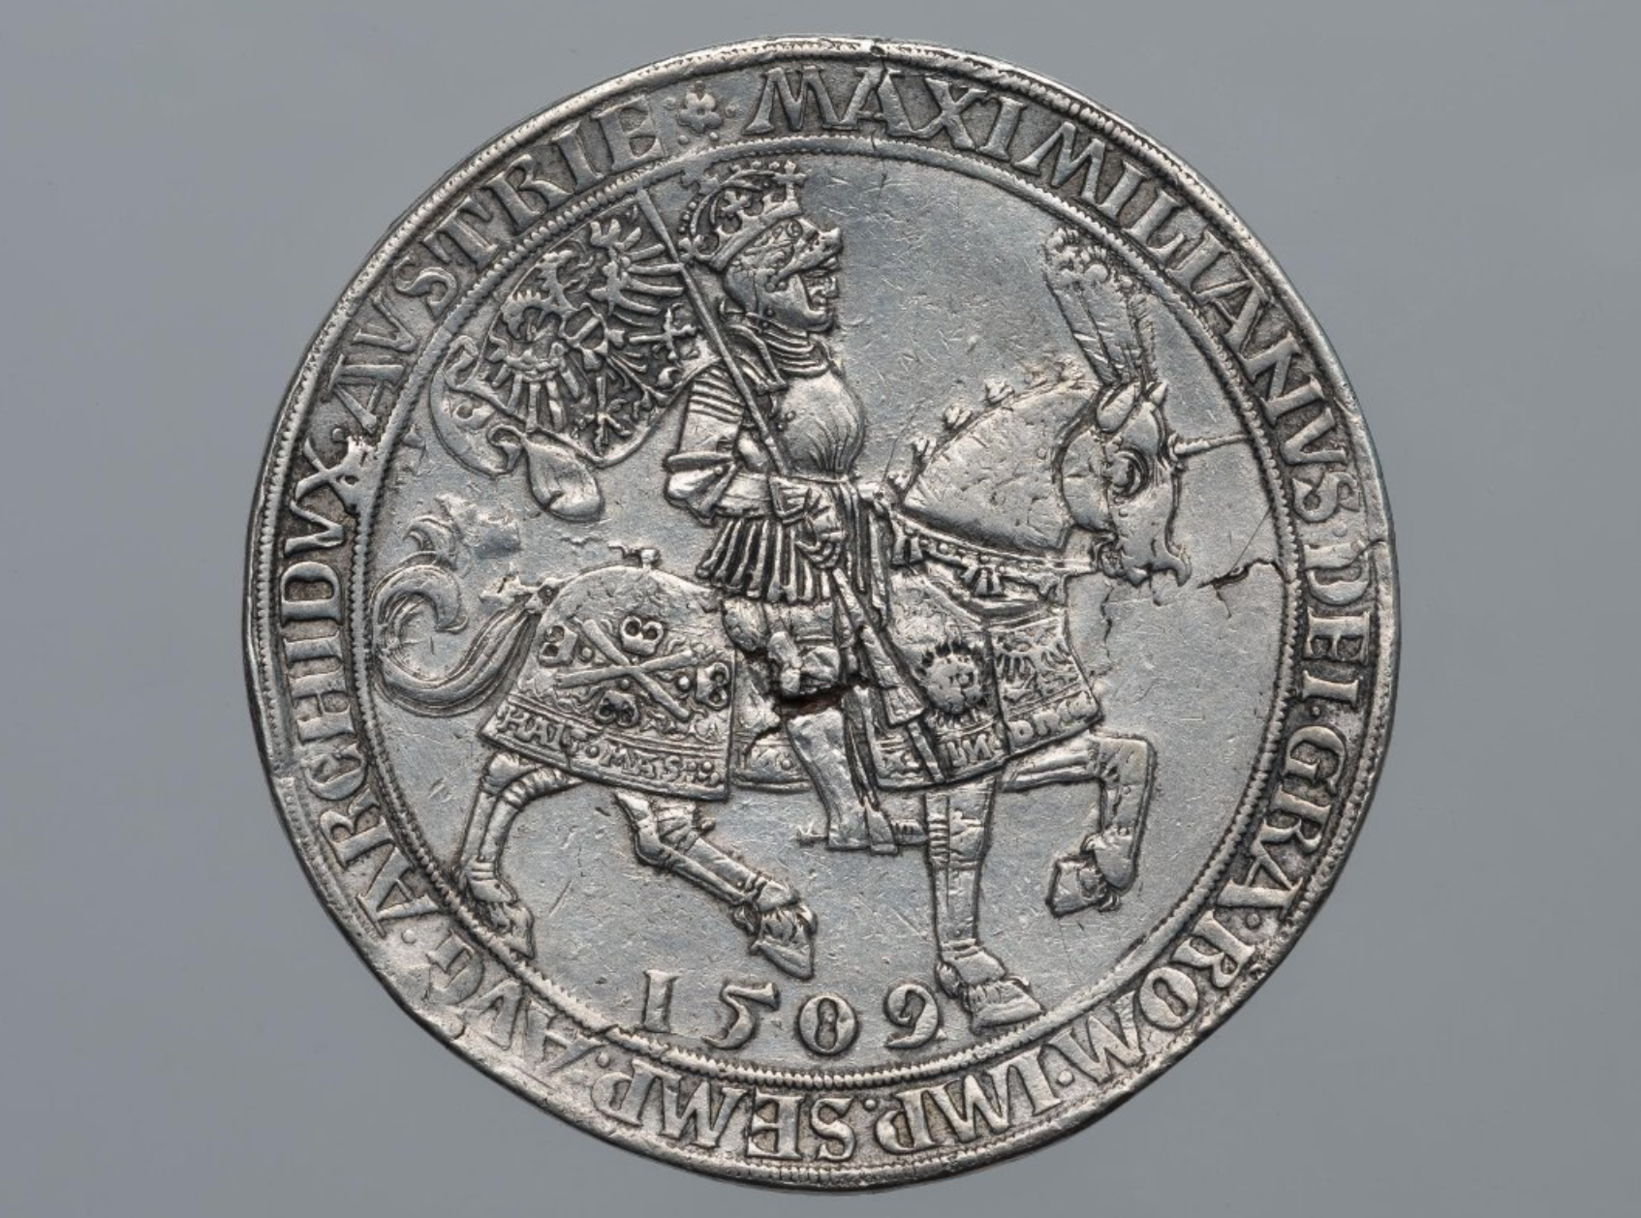  Священная Римская империя. Максимилиан I (1477–1519, император с 1508). Двукратный шаугульдинер 1509 г. Серебро, чеканка (ГИМ 93304, КР ОН 651847)